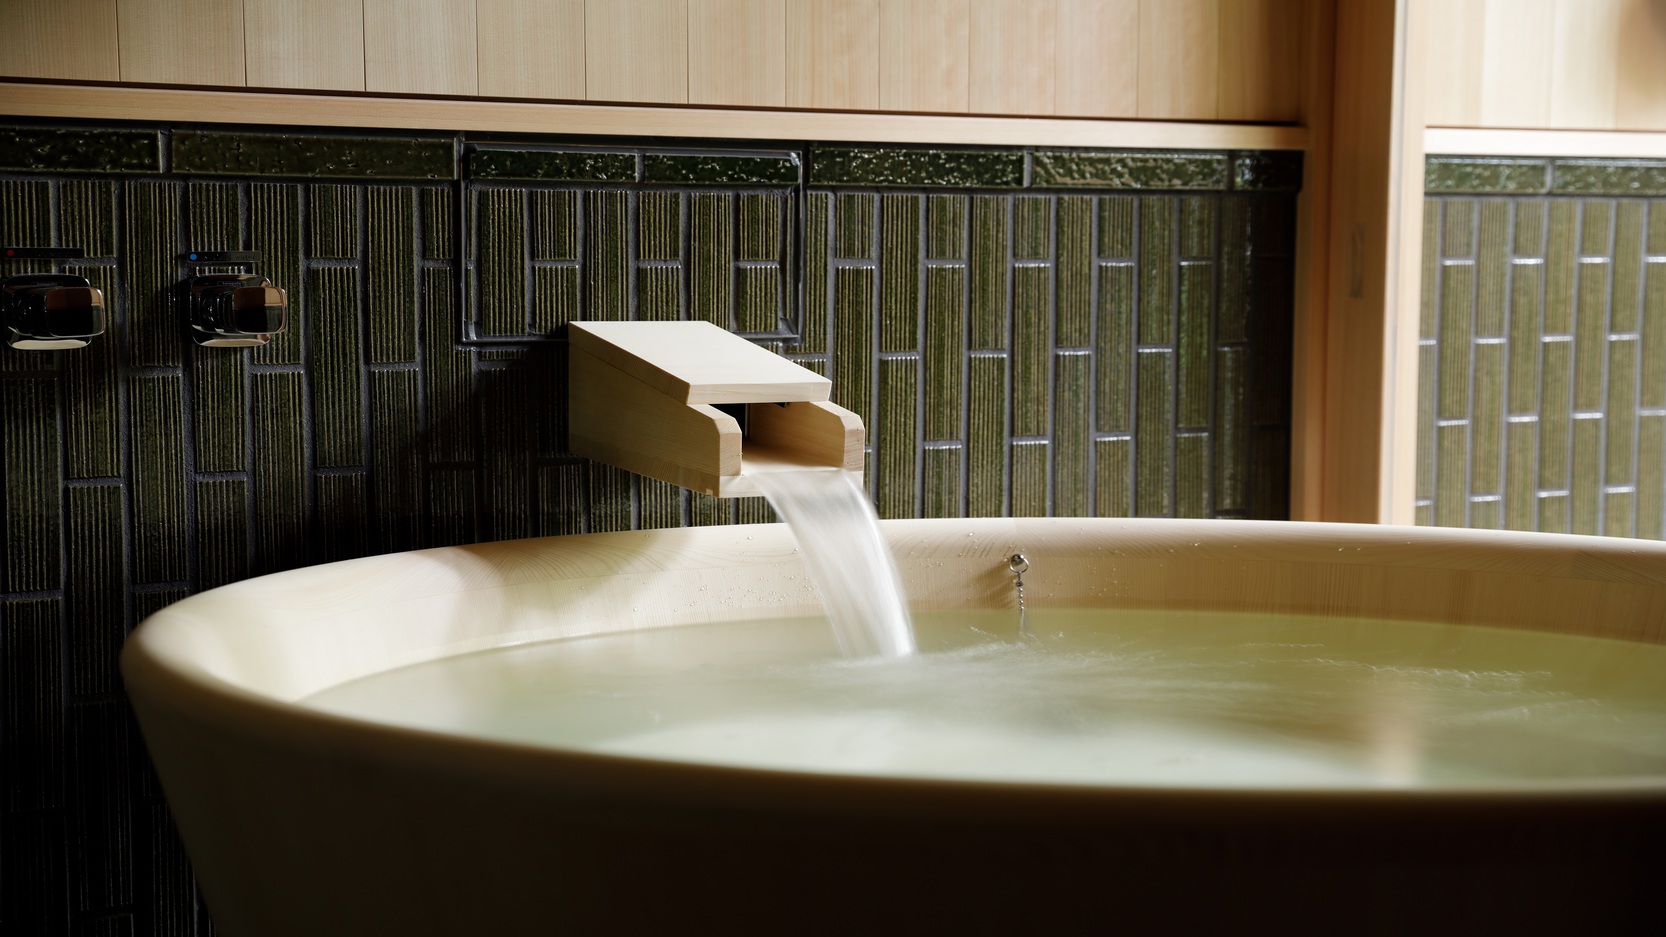 【スタンダードプラン】客室風呂の天然温泉で贅沢な寛ぎのひとときを体験〜数寄屋風別館「佳水園」〜